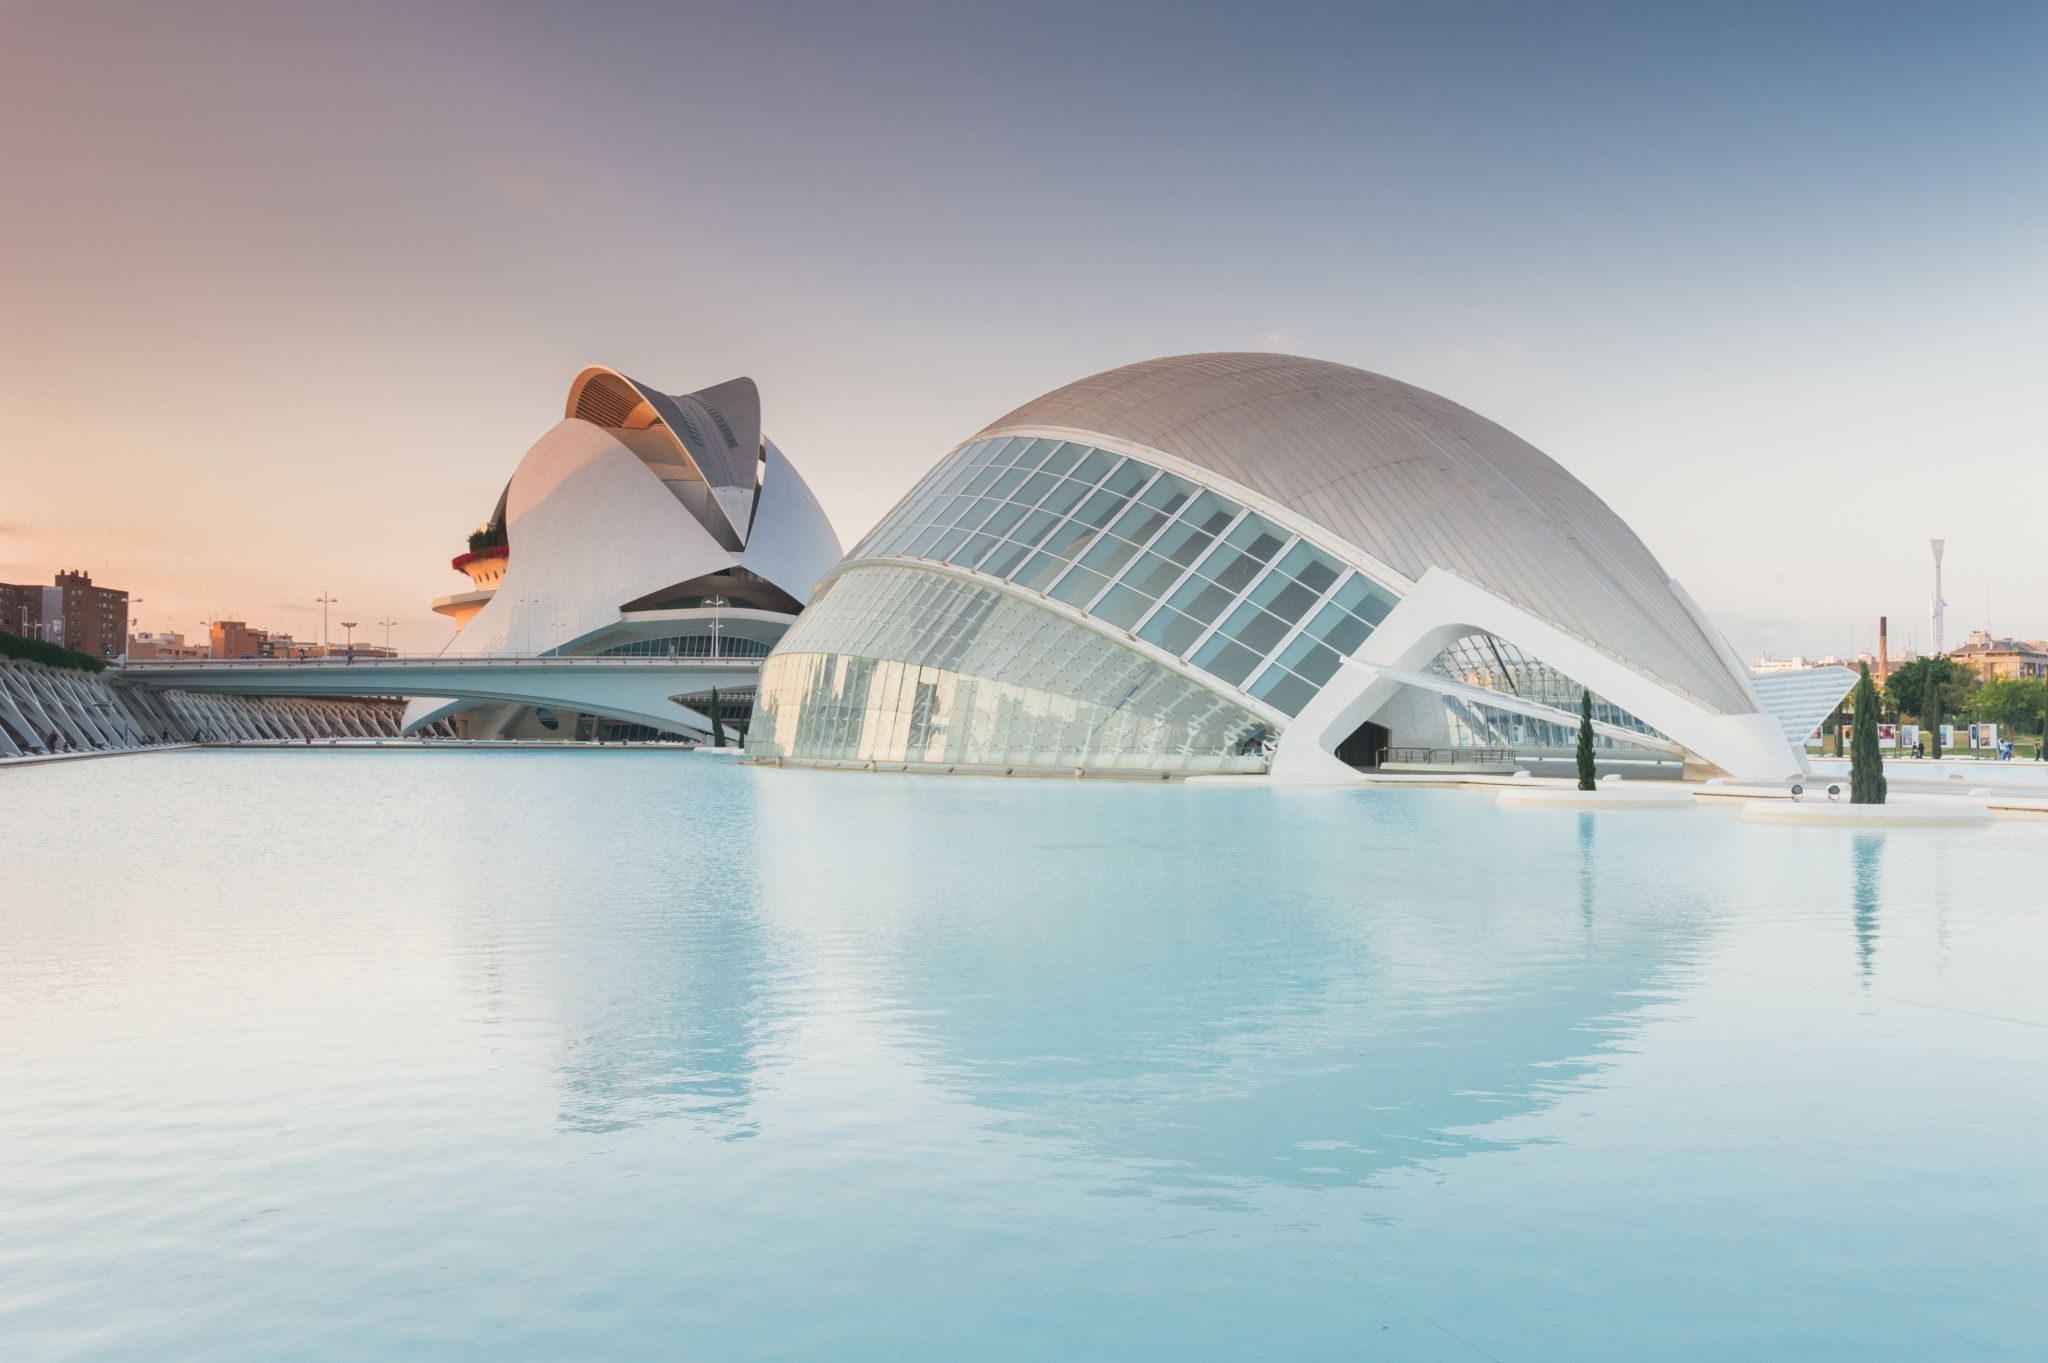 City of Arts and Sciences by Santiago Calatrava